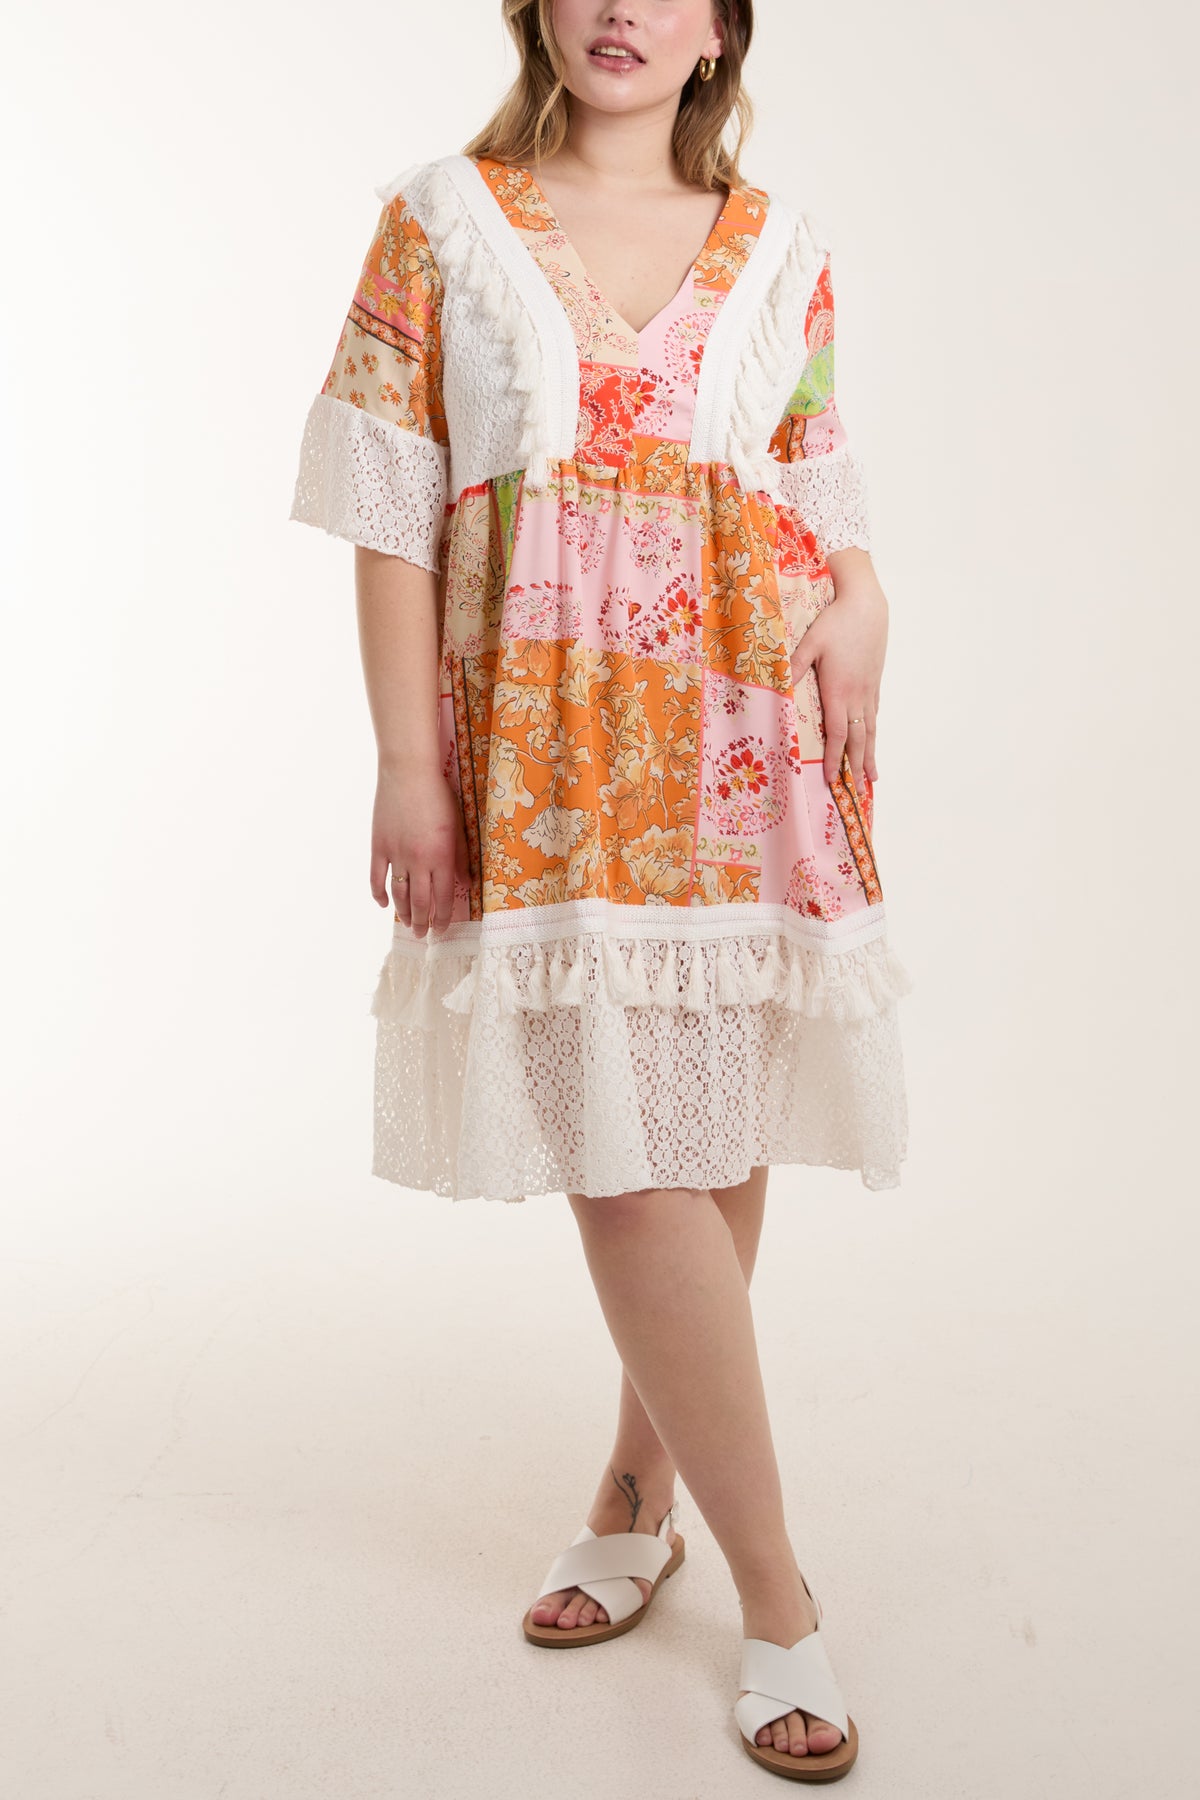 Floral Print Dress w/ Lace & Tassels